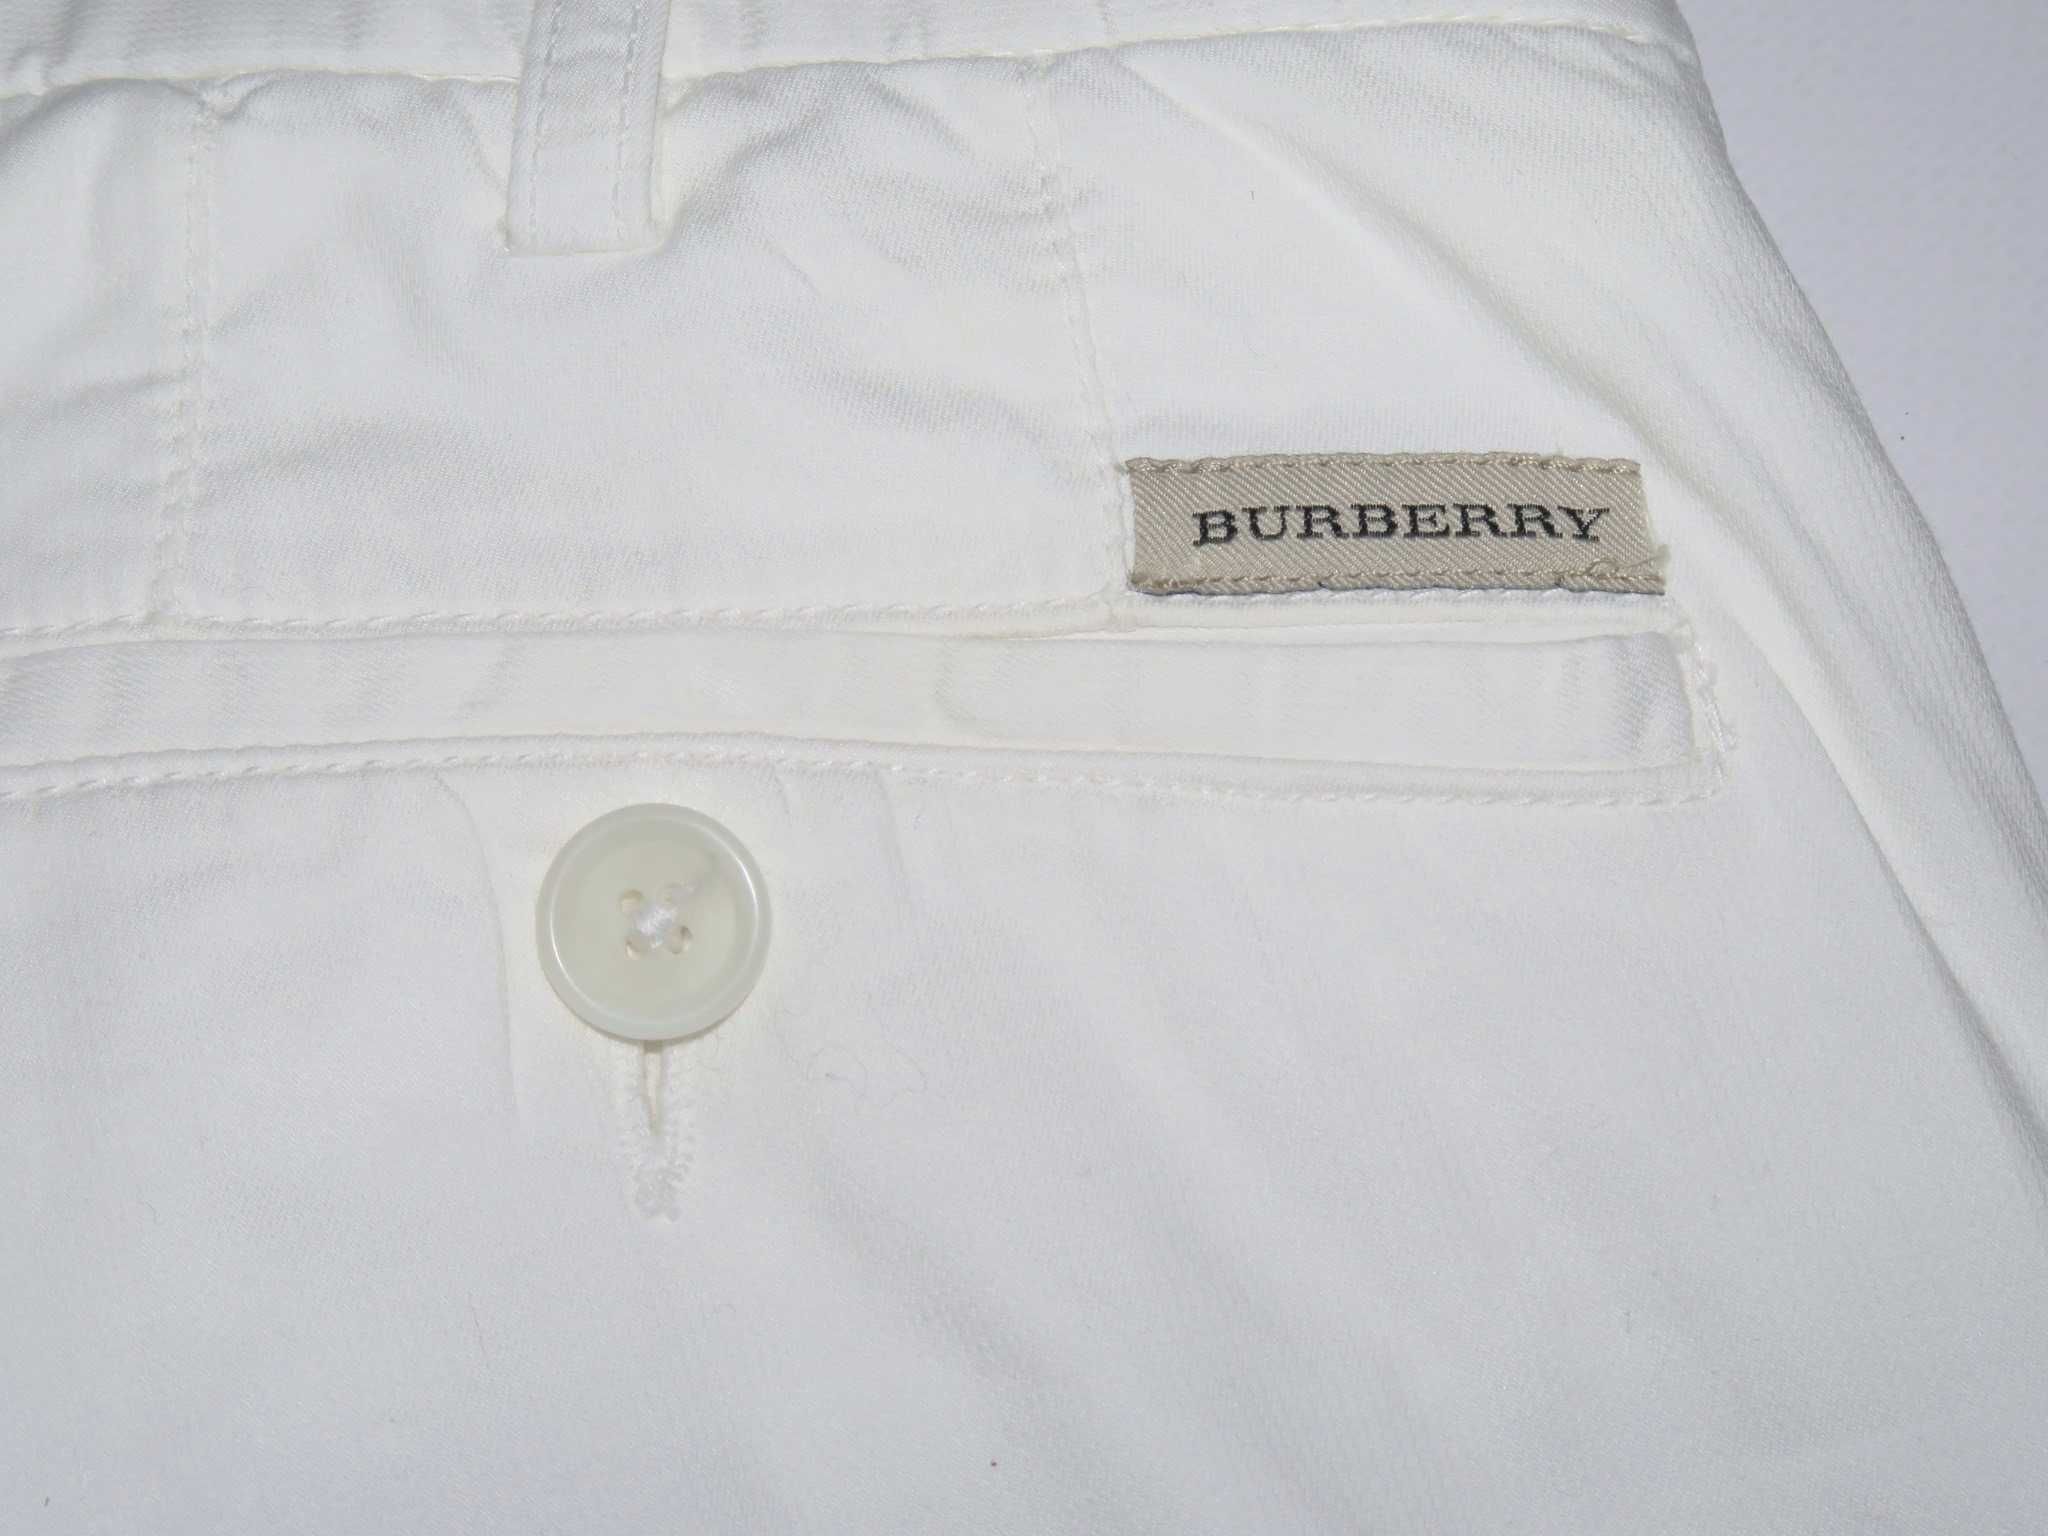 Burberry spodnie chinosy eleganckie 48